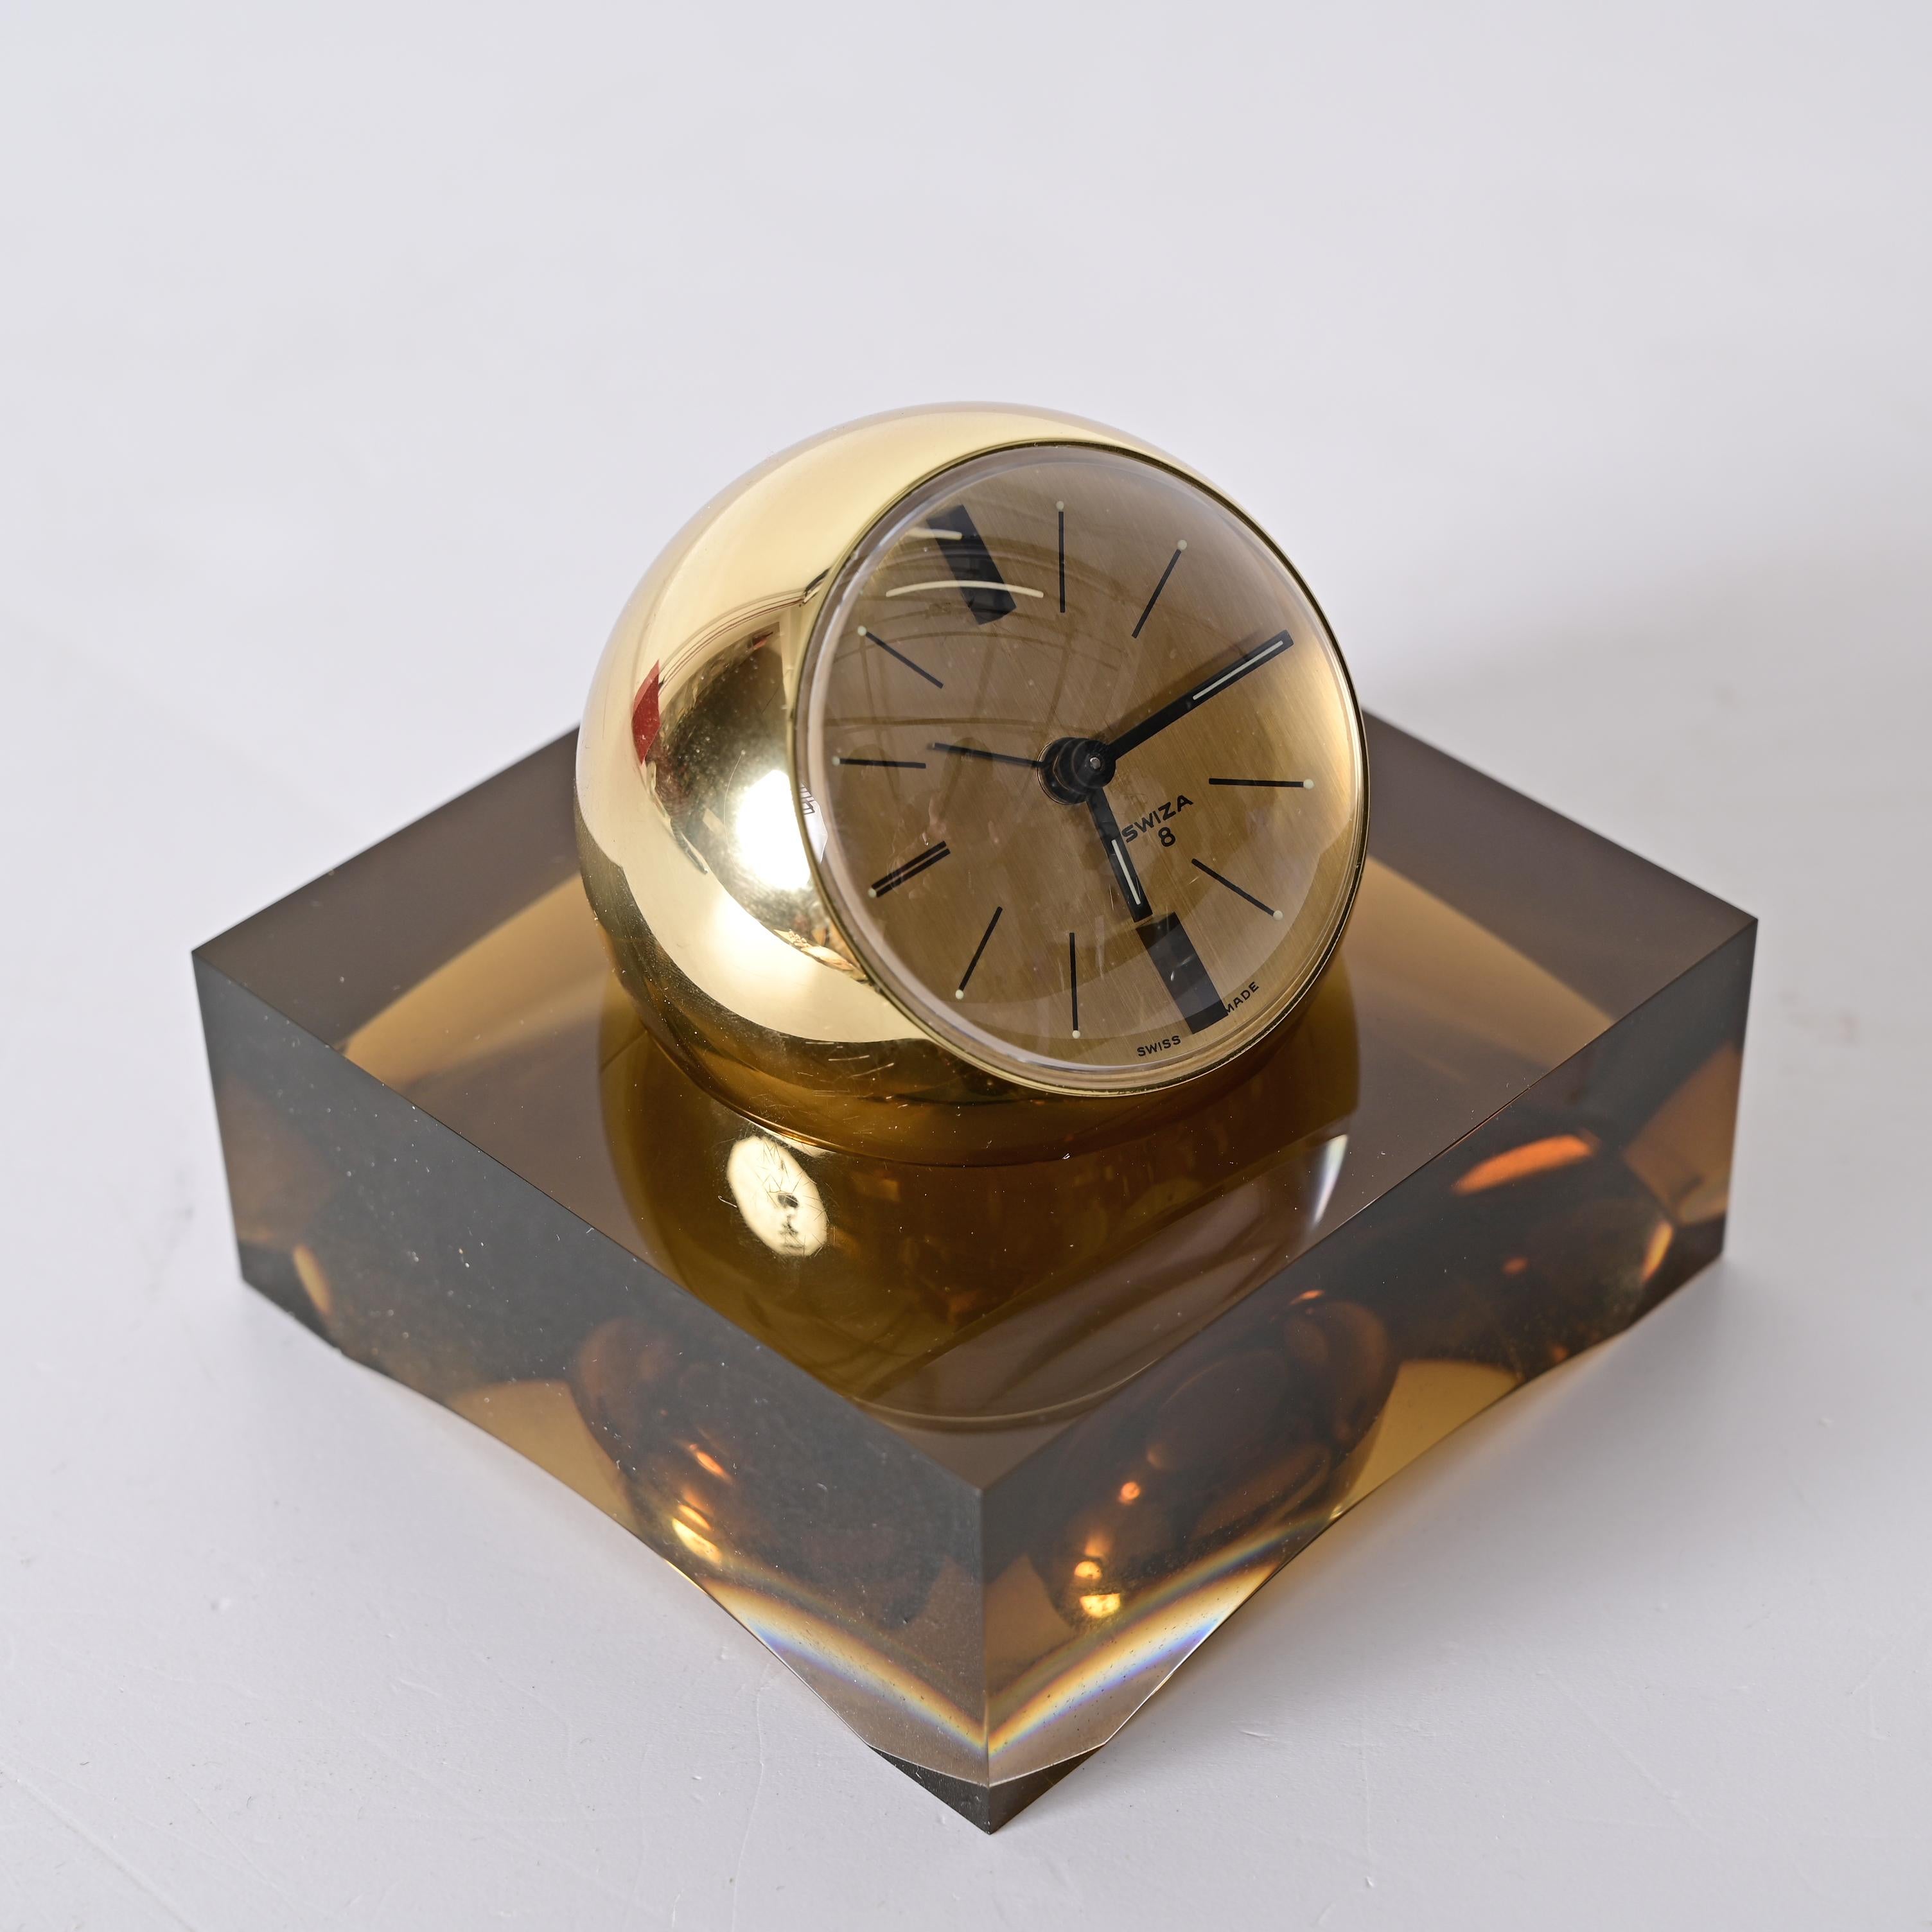 Lucite Horloge sphérique Swiza rare de 8 jours dorée avec base en lucite fumée, boîte et garantie en vente